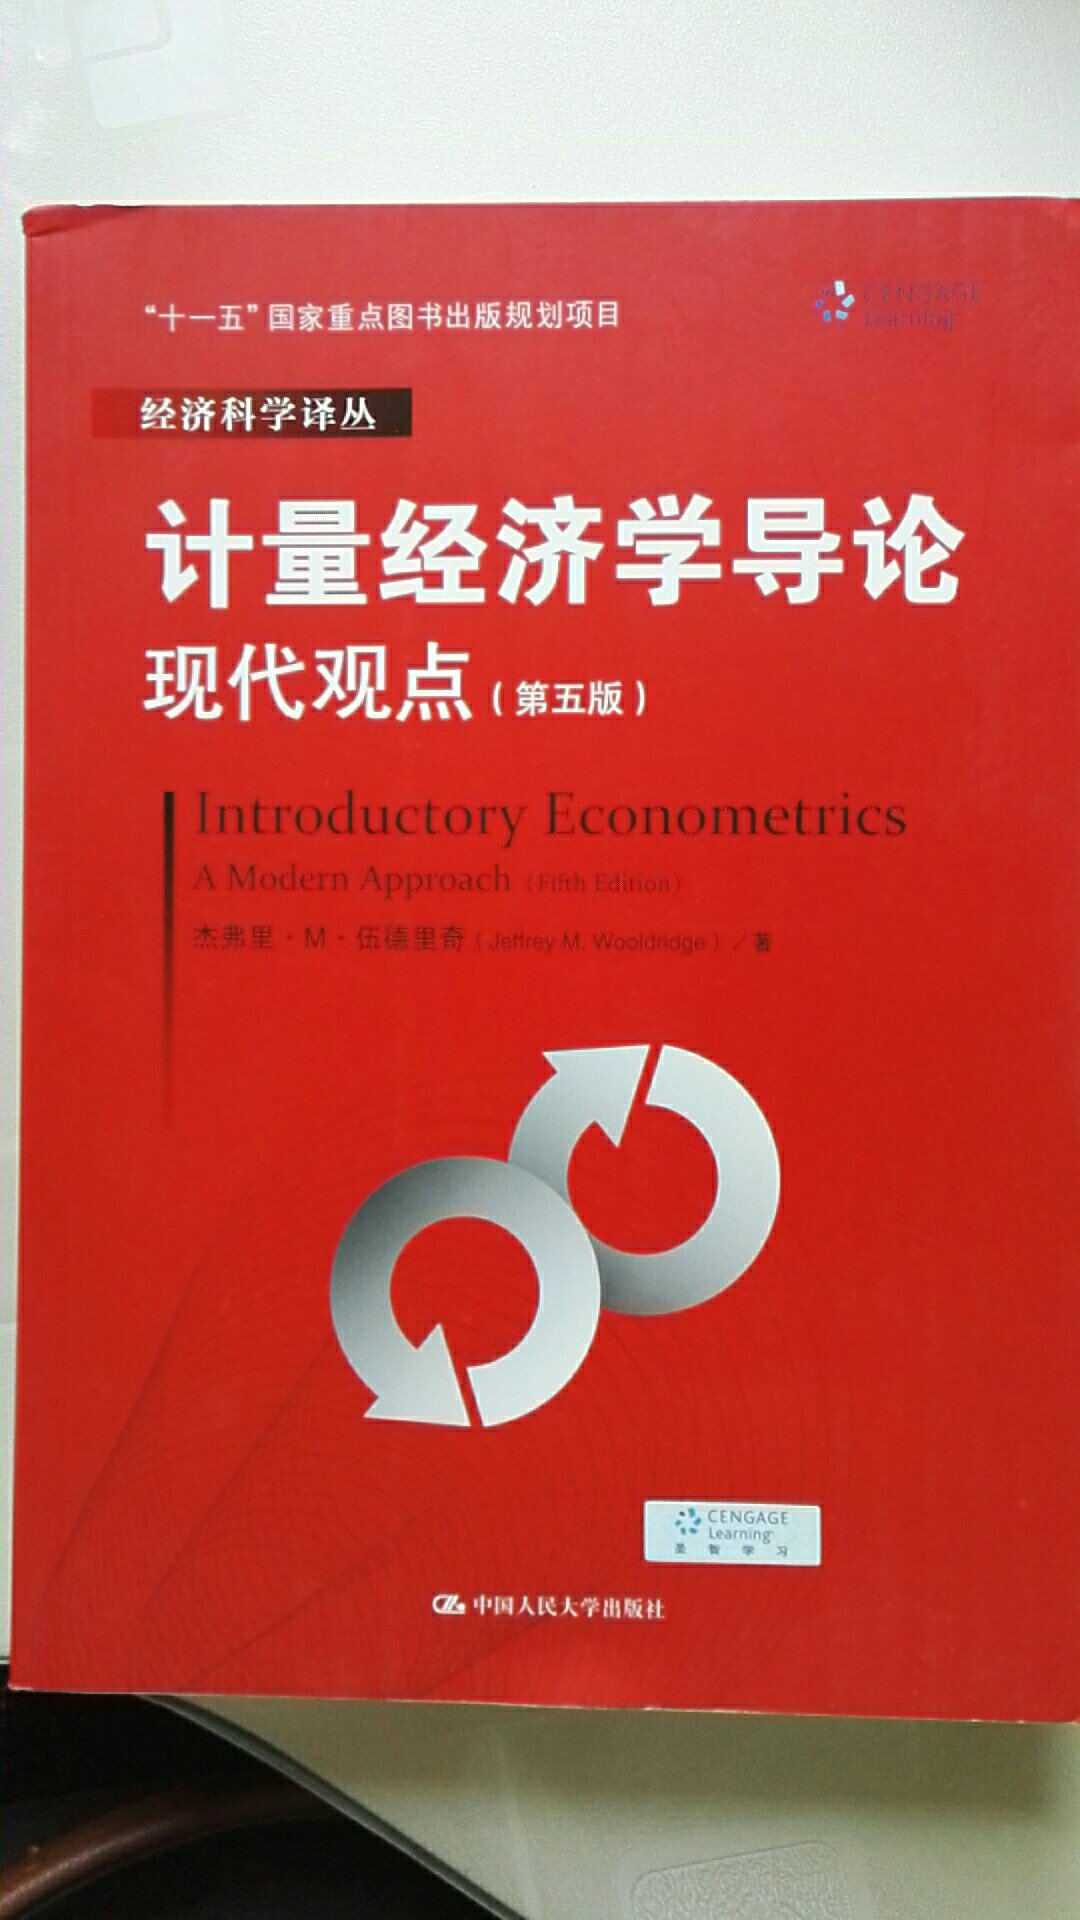 计量经济学入门学习的经典教材。